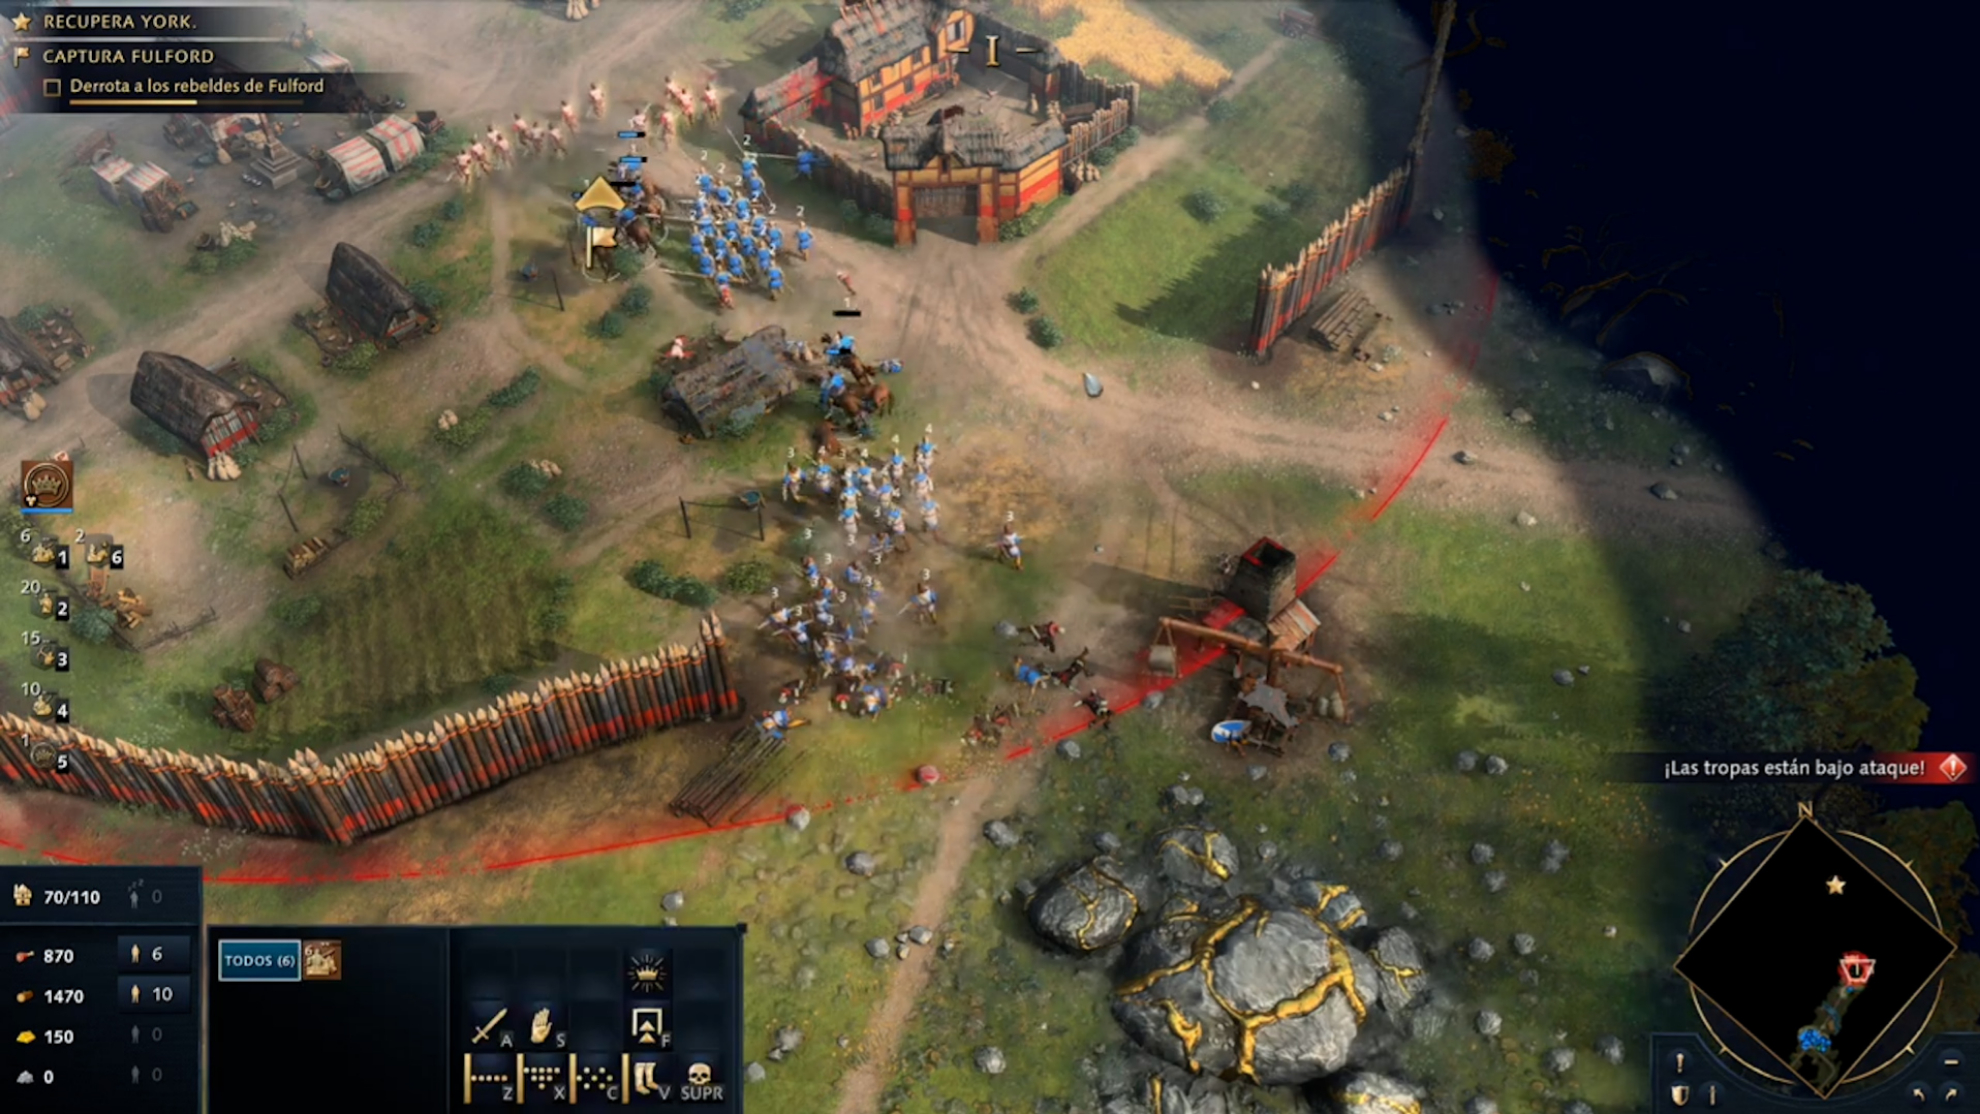 Campaa en Age of Empires IV